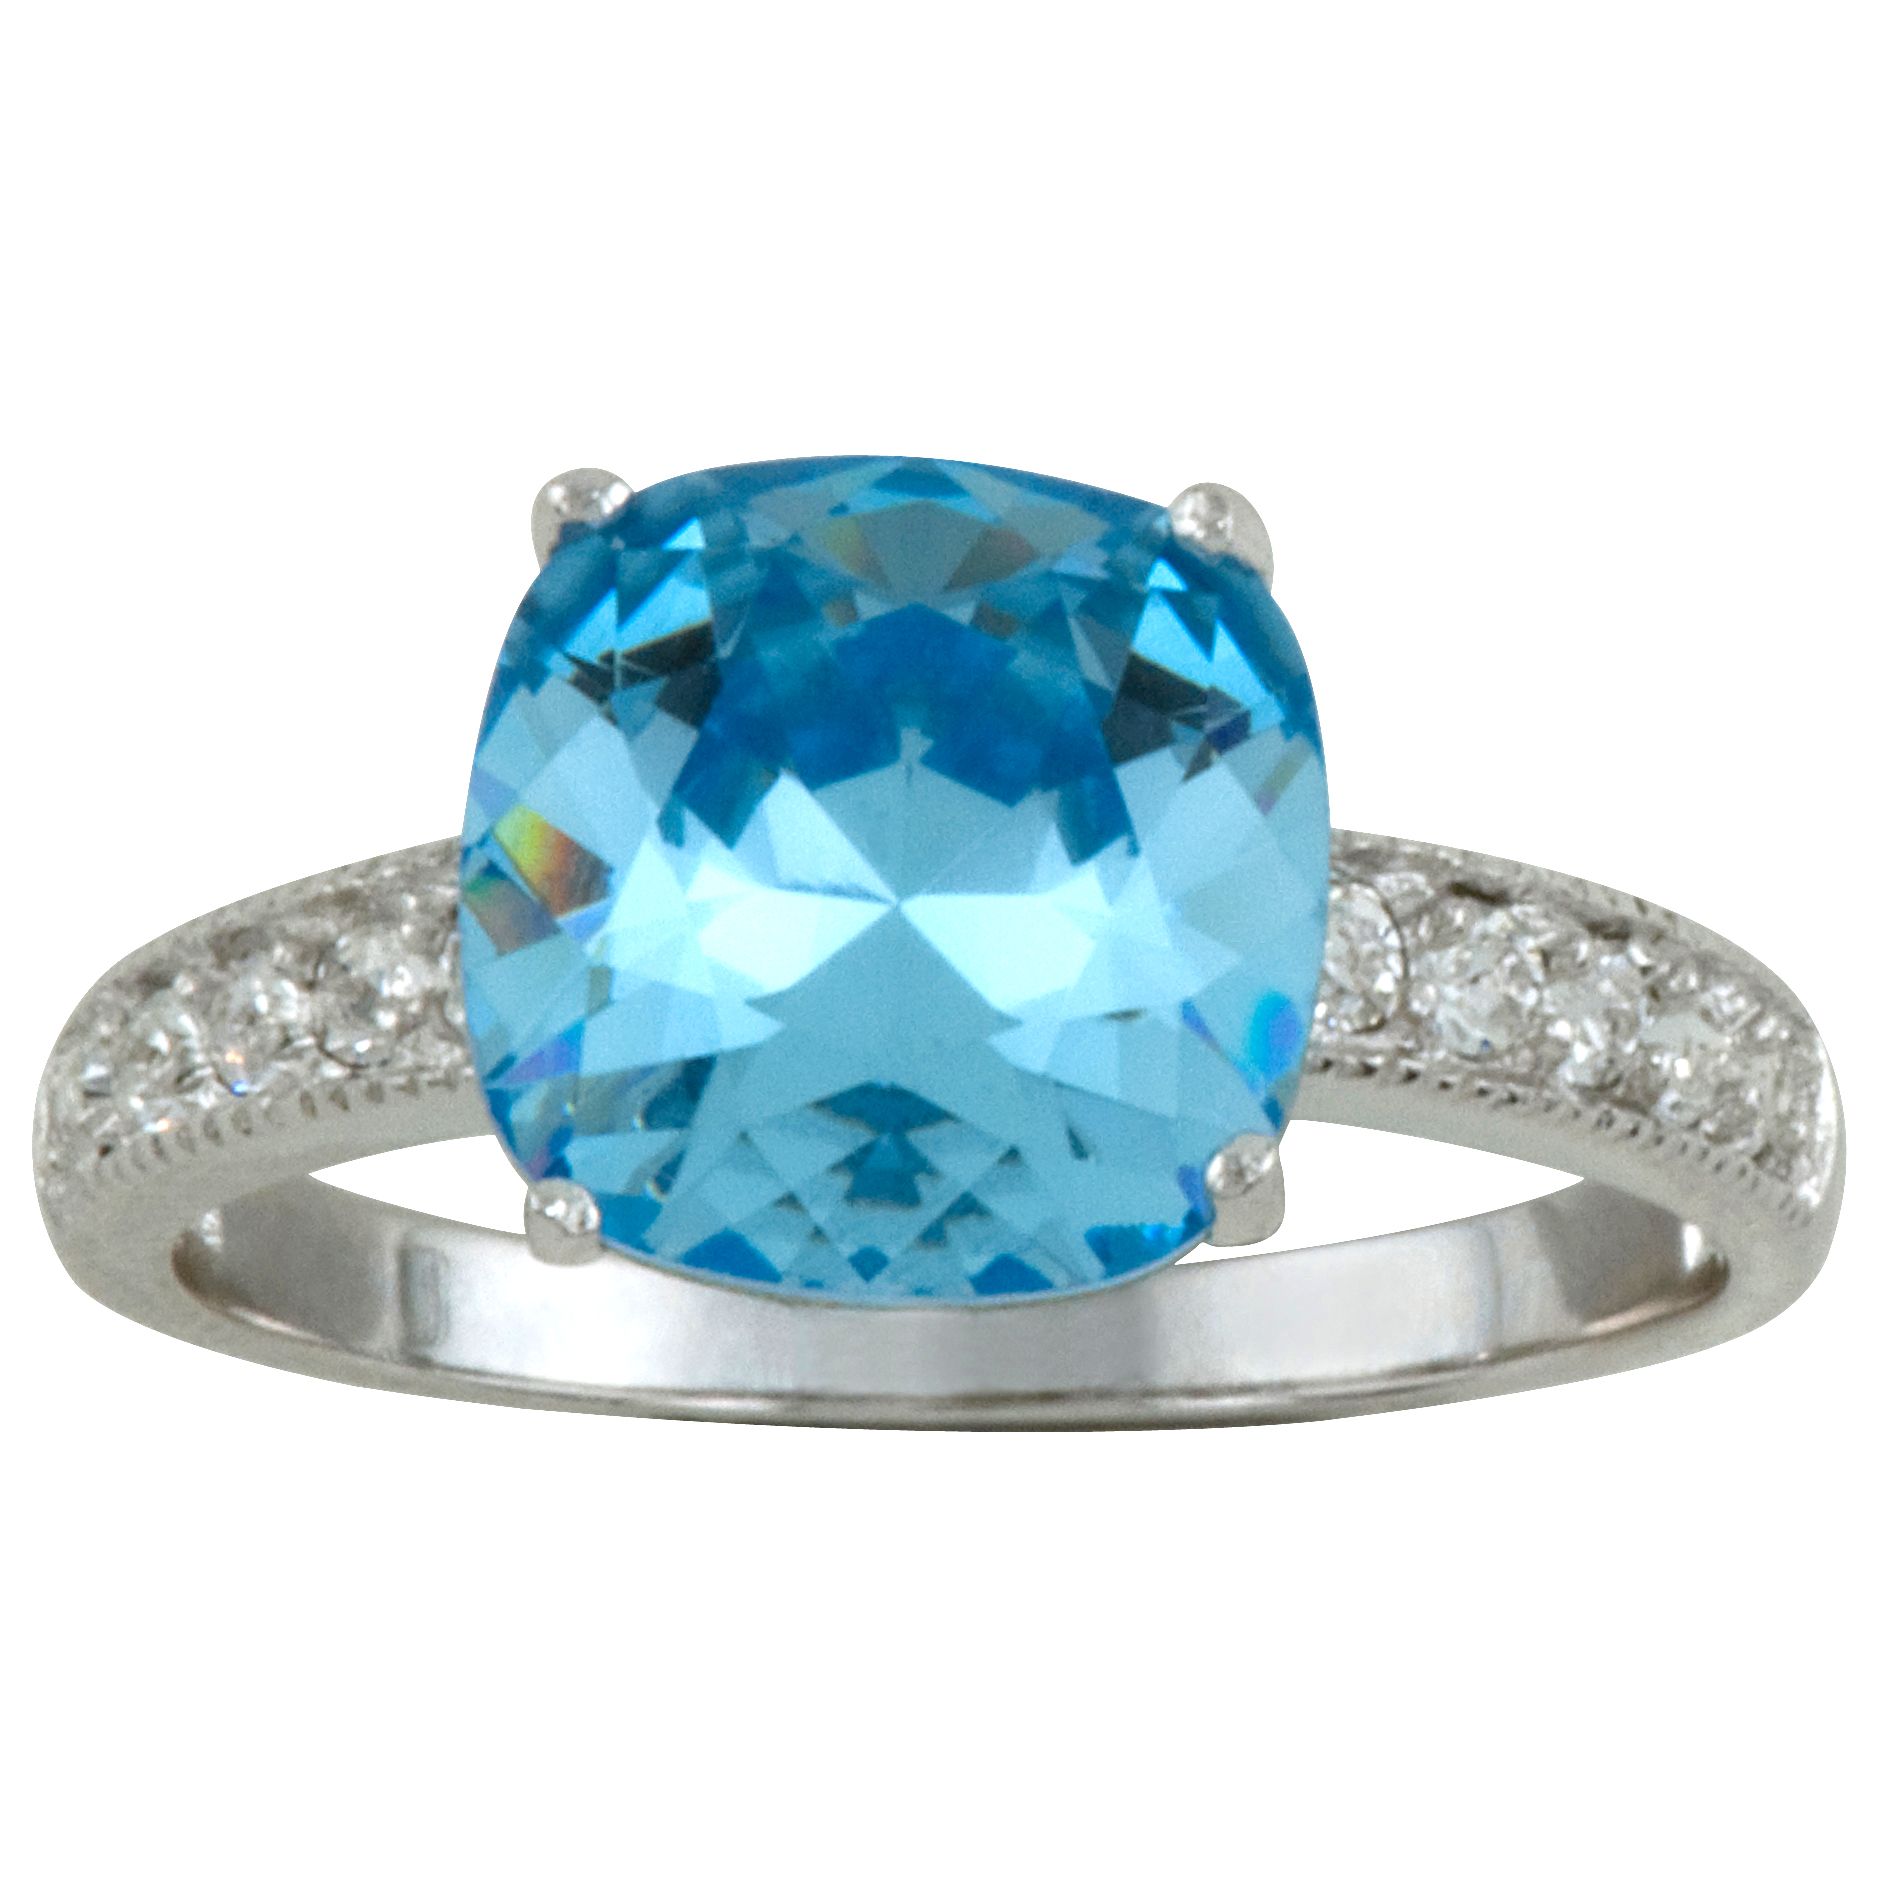 Cushion-cut Aquamarine & Clear Swarovski Crystal Ring in Rhodium over SS_in Size 8